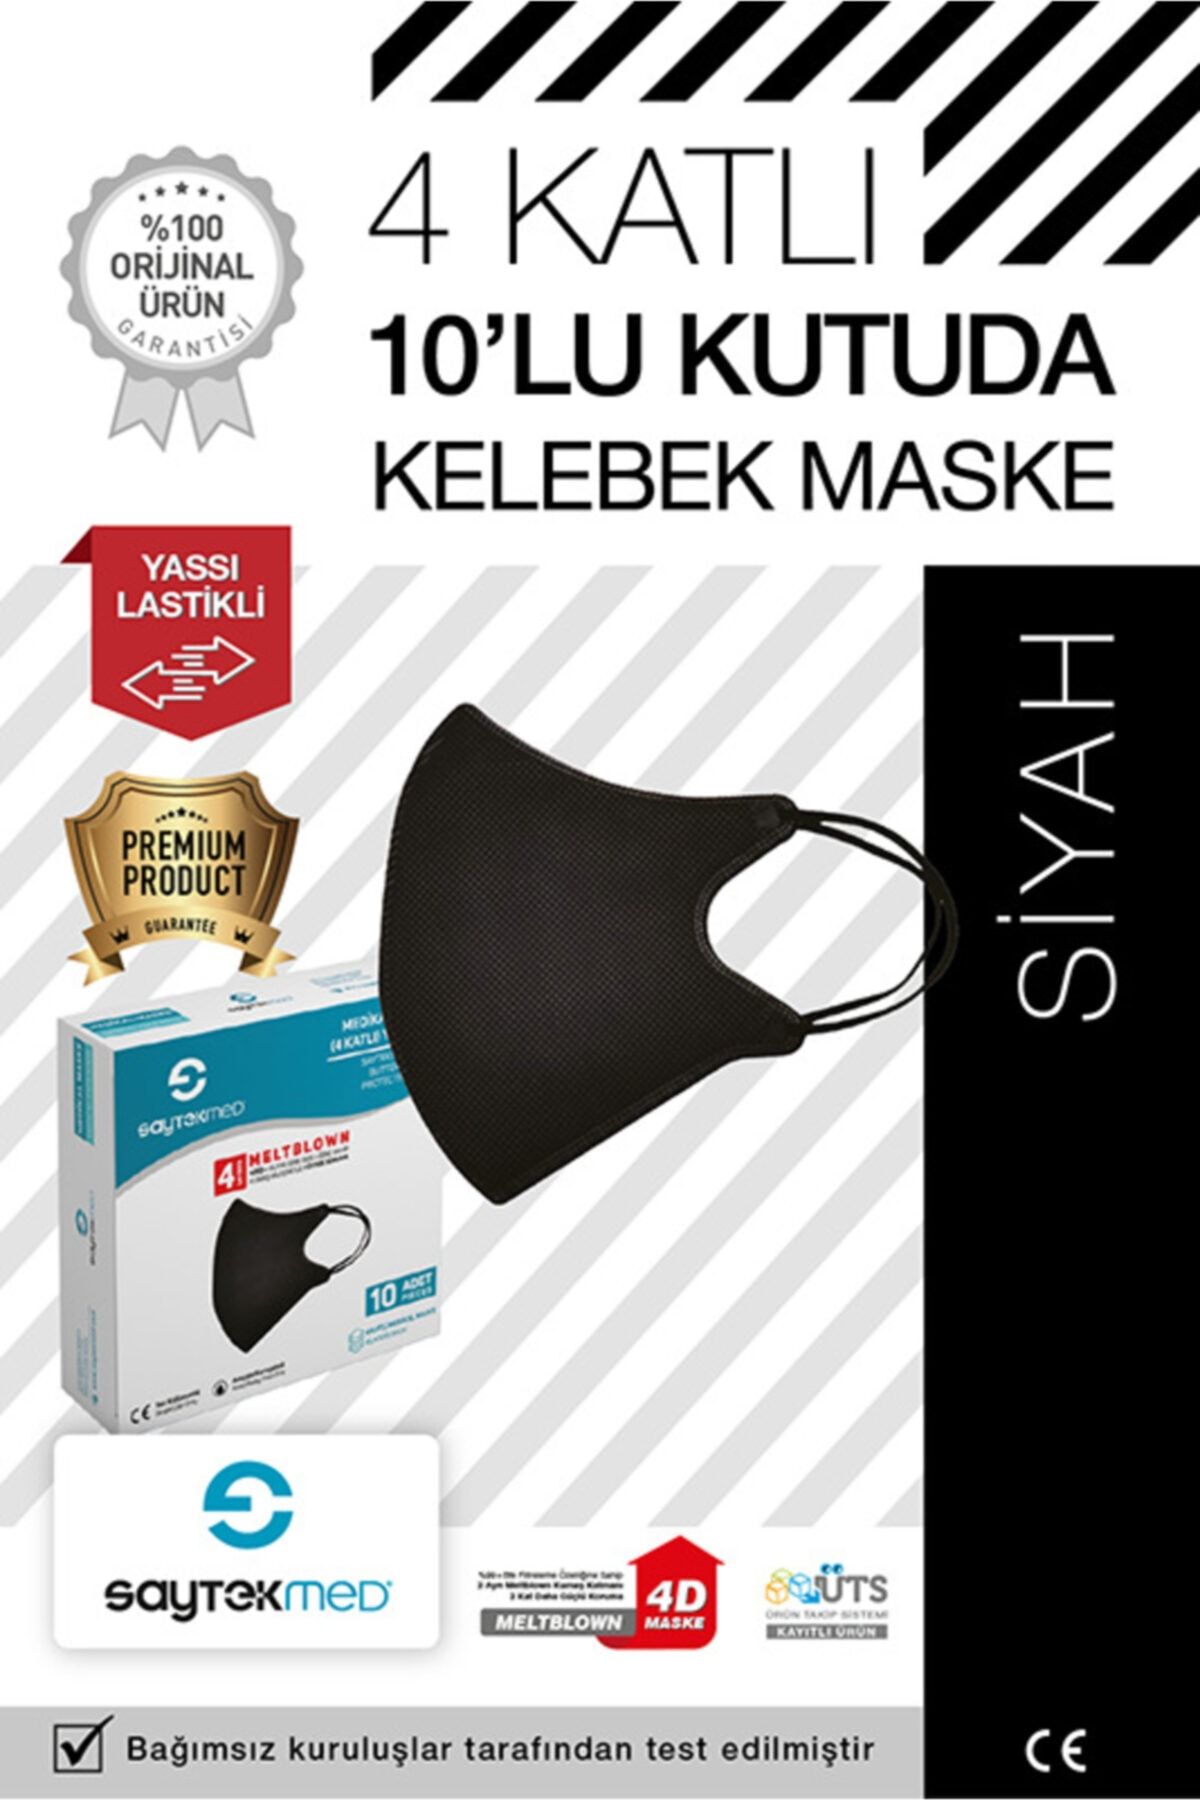 SAYTEKMED Özel Kelebek Tasarımlı Iki Kat Meltblown 4 Katlı Siyah Maske (1 KUTU/10 ADET)